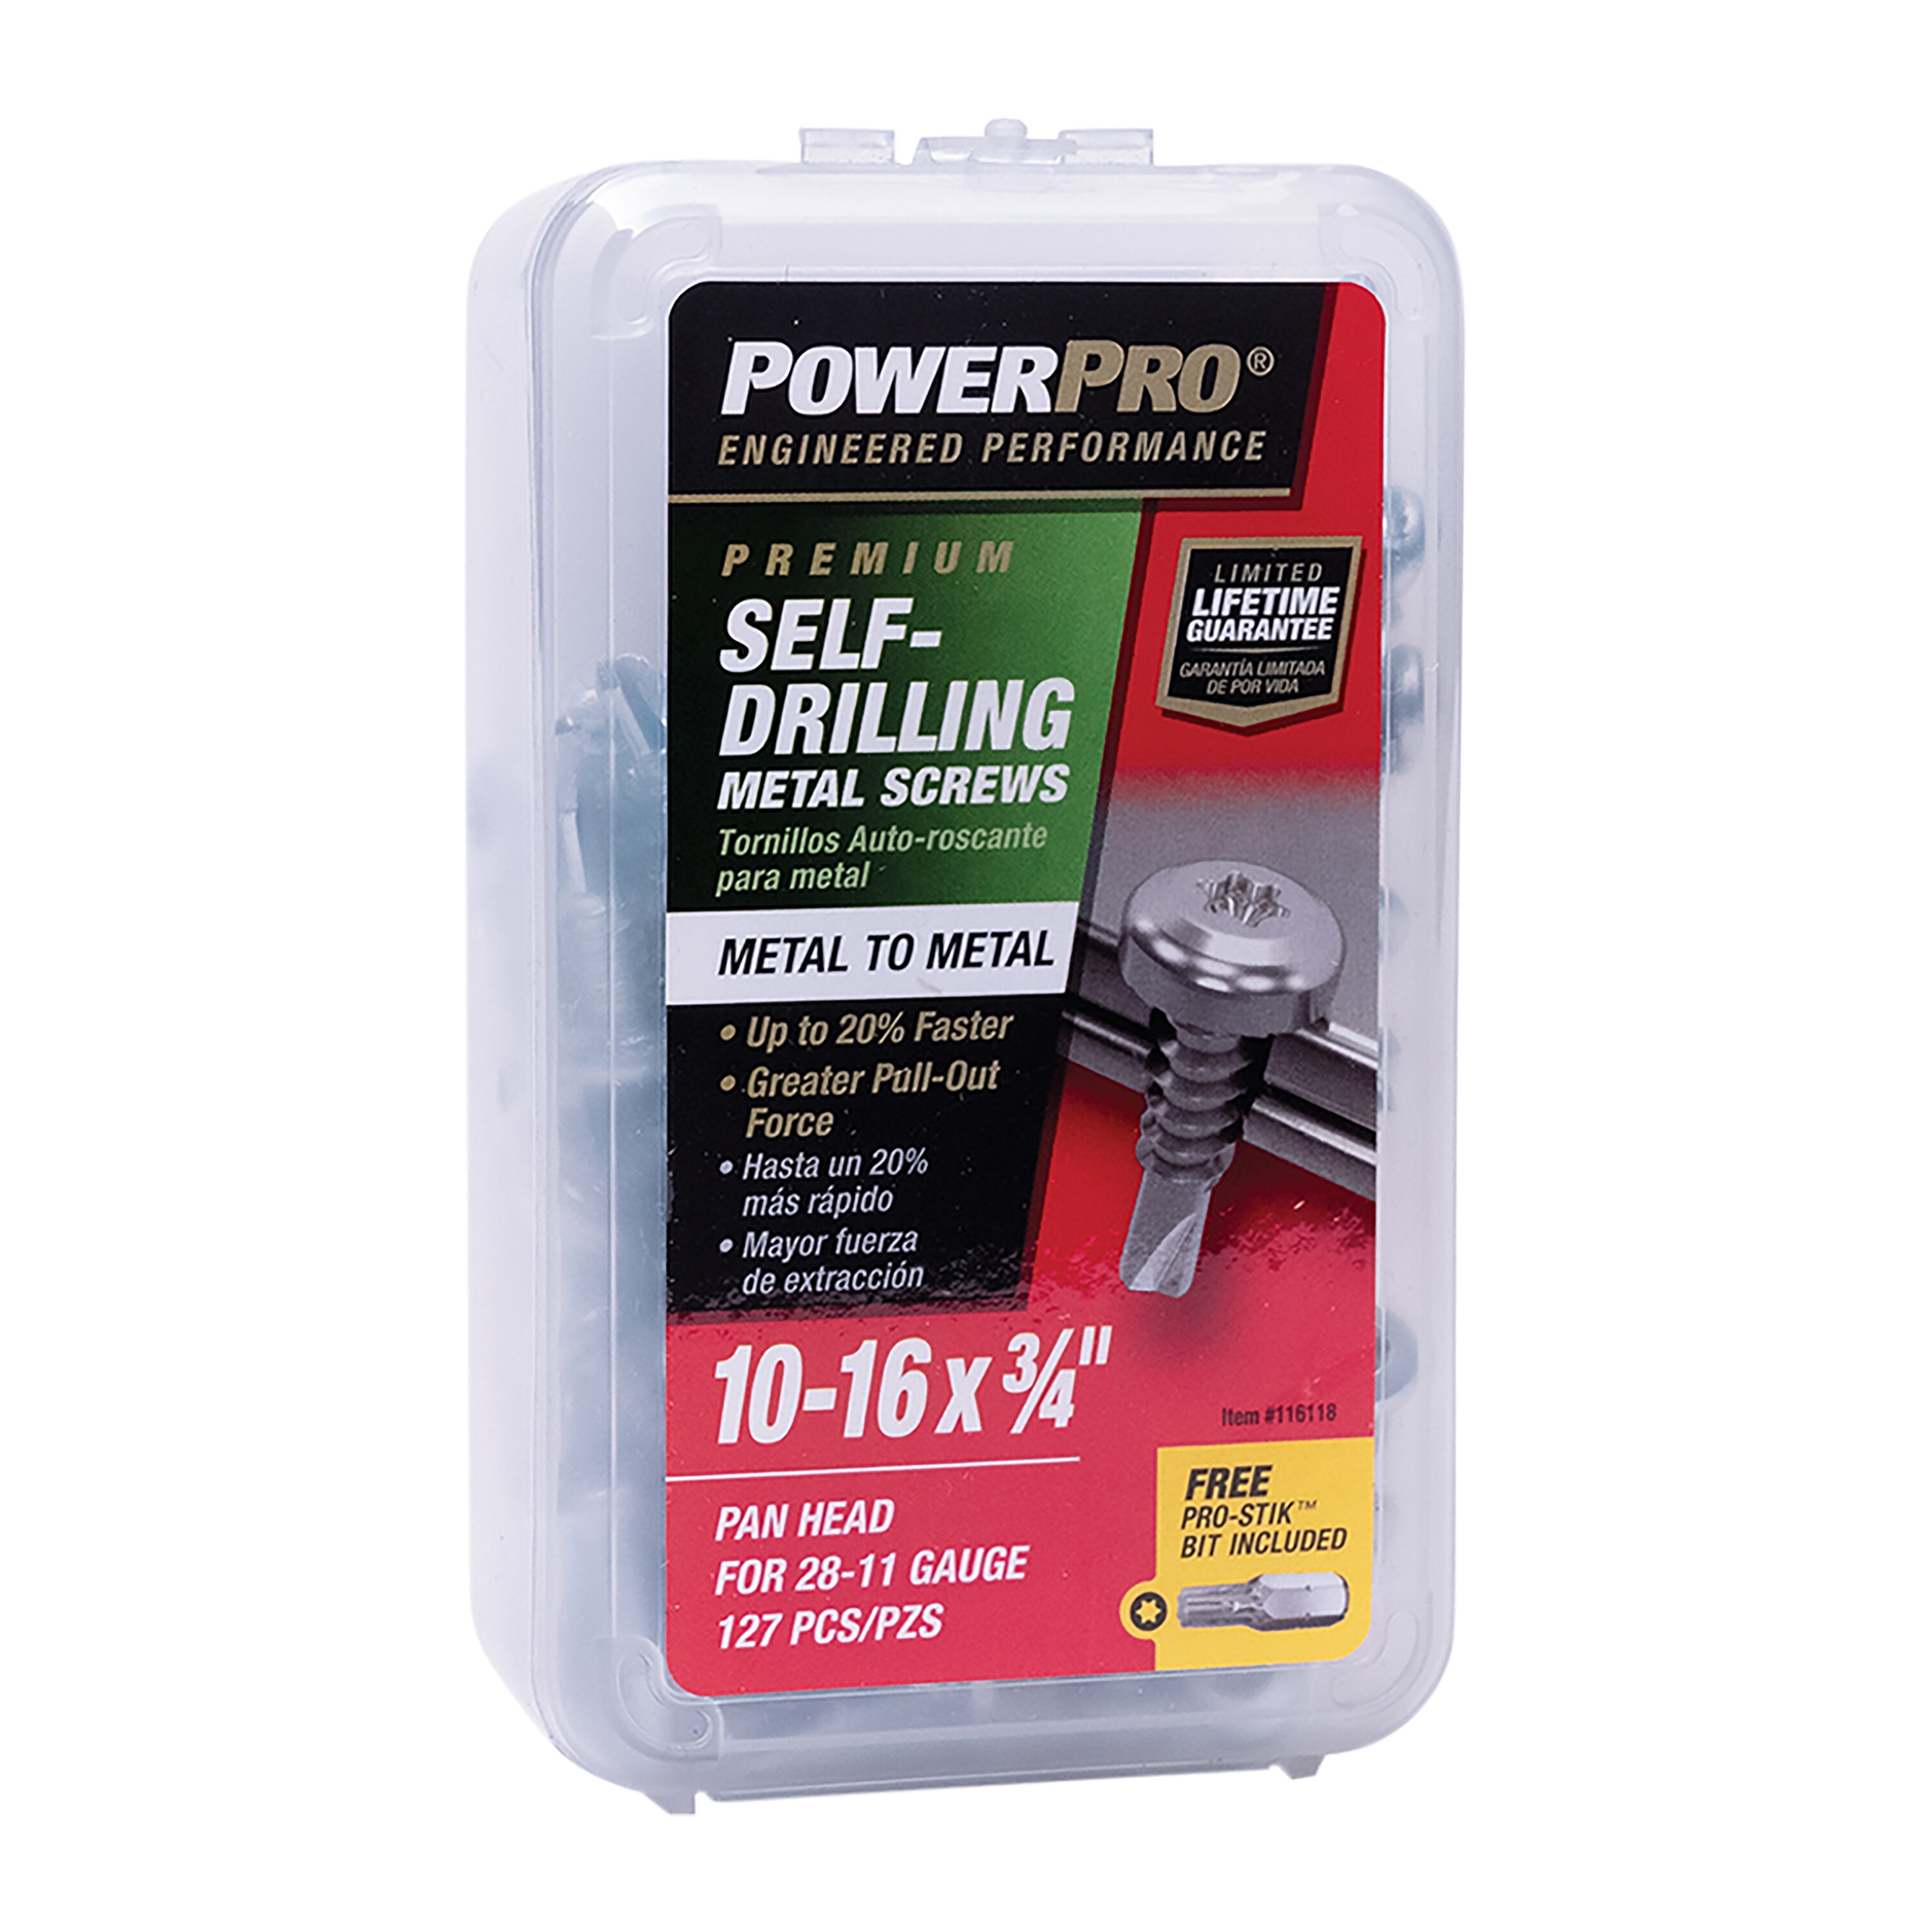 Power Pro Self-Drilling Wood Screws, Star, 4-1/2 x #10, 5 lbs., Hillman, 48616